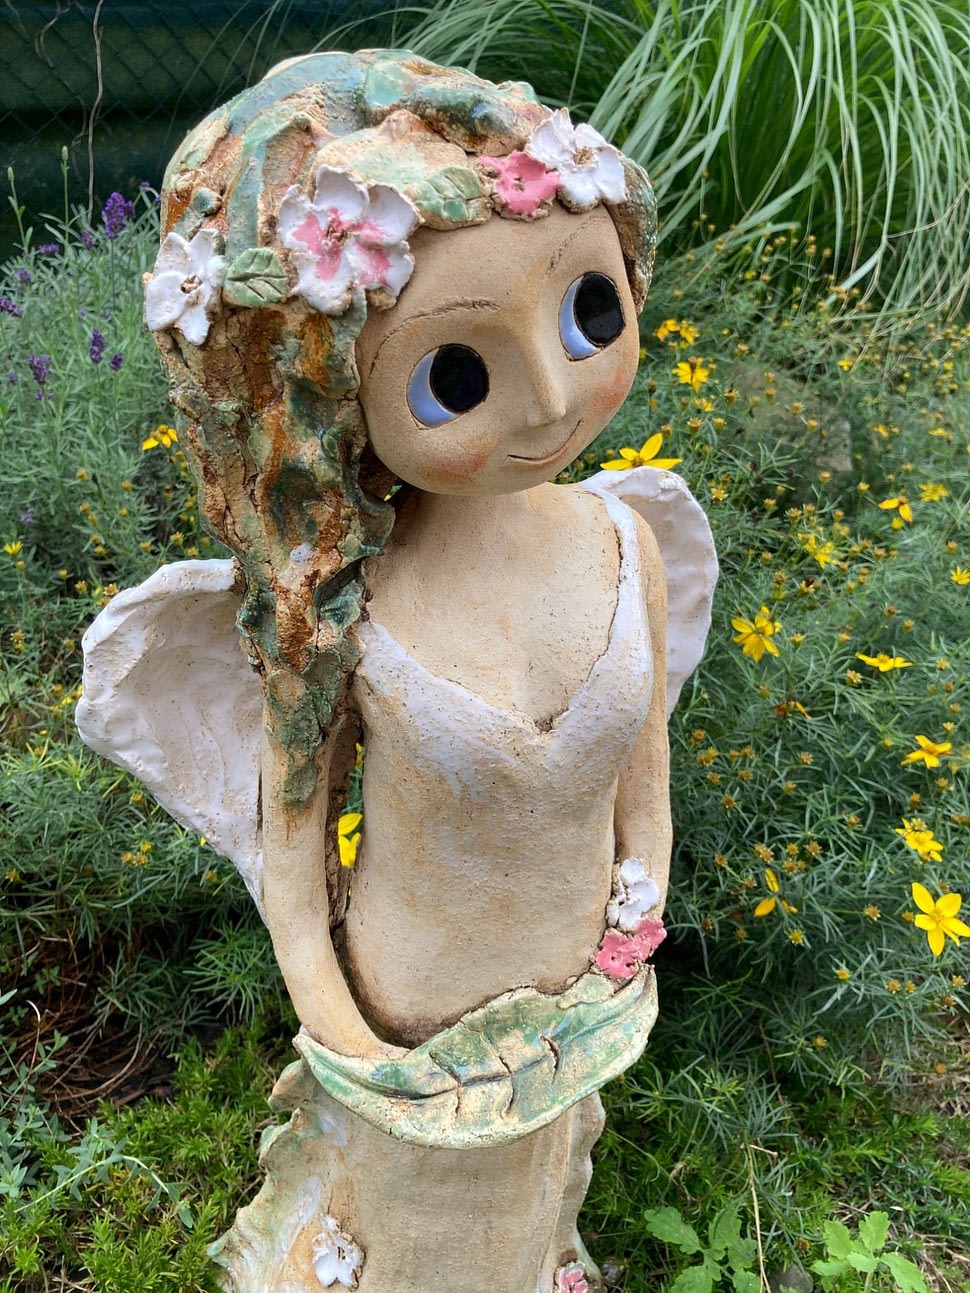 anděl víla socha dekorace do zahrady keramika figura keramikaandee květiny